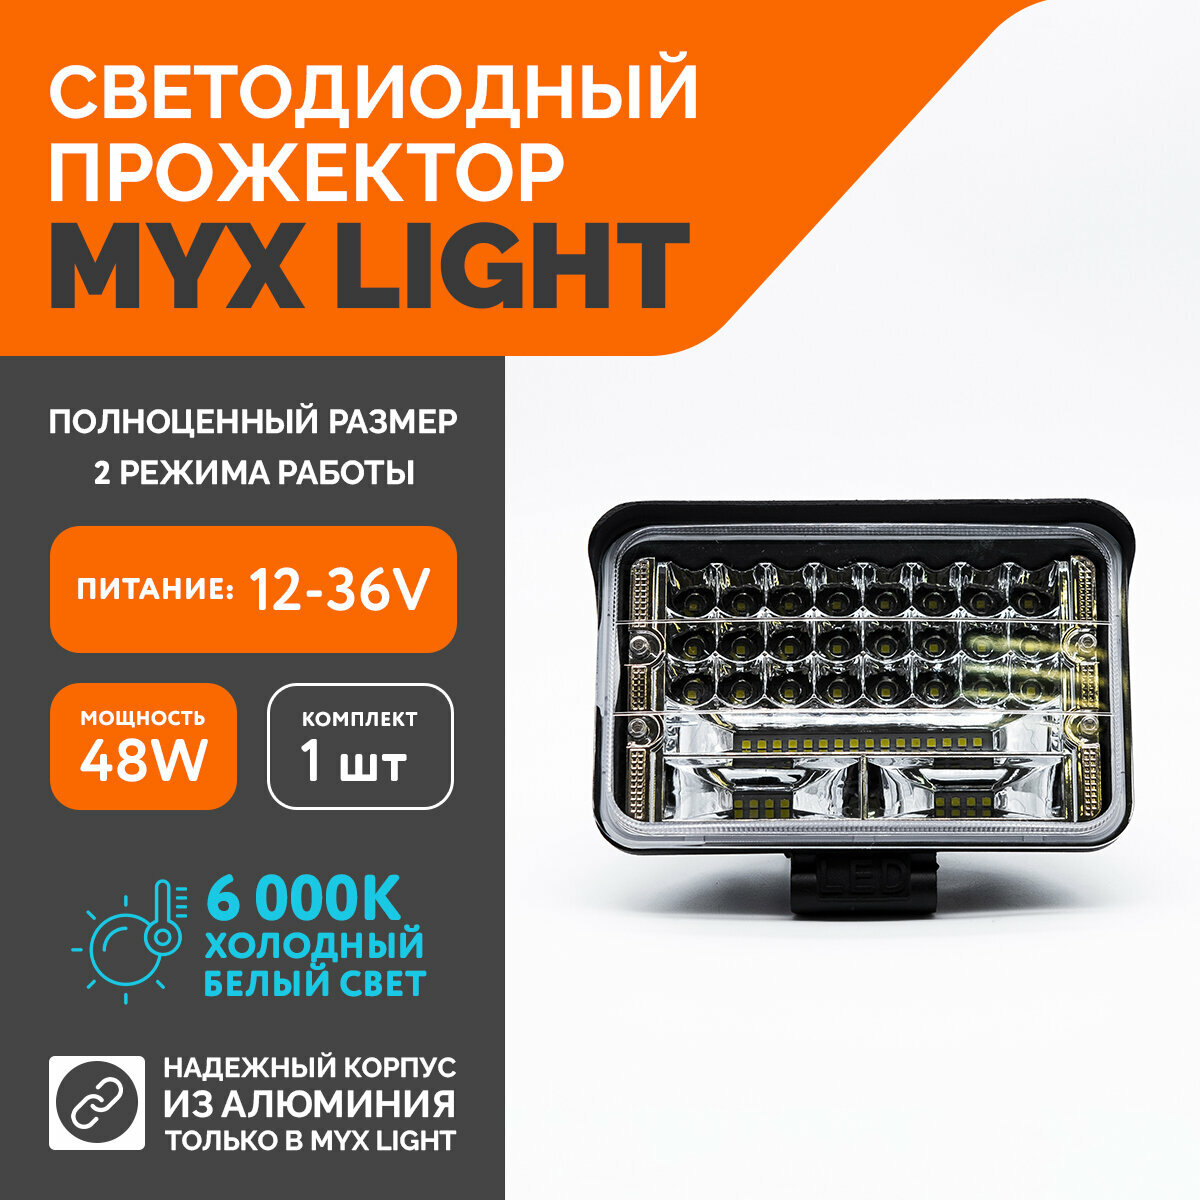 Светодиодная противотуманная фара для авто MYX-Light 12-36V мощность 48W 6000K прожектор дневные ходовые огни для легковых и грузовых авто джипов квадроциклов 1шт